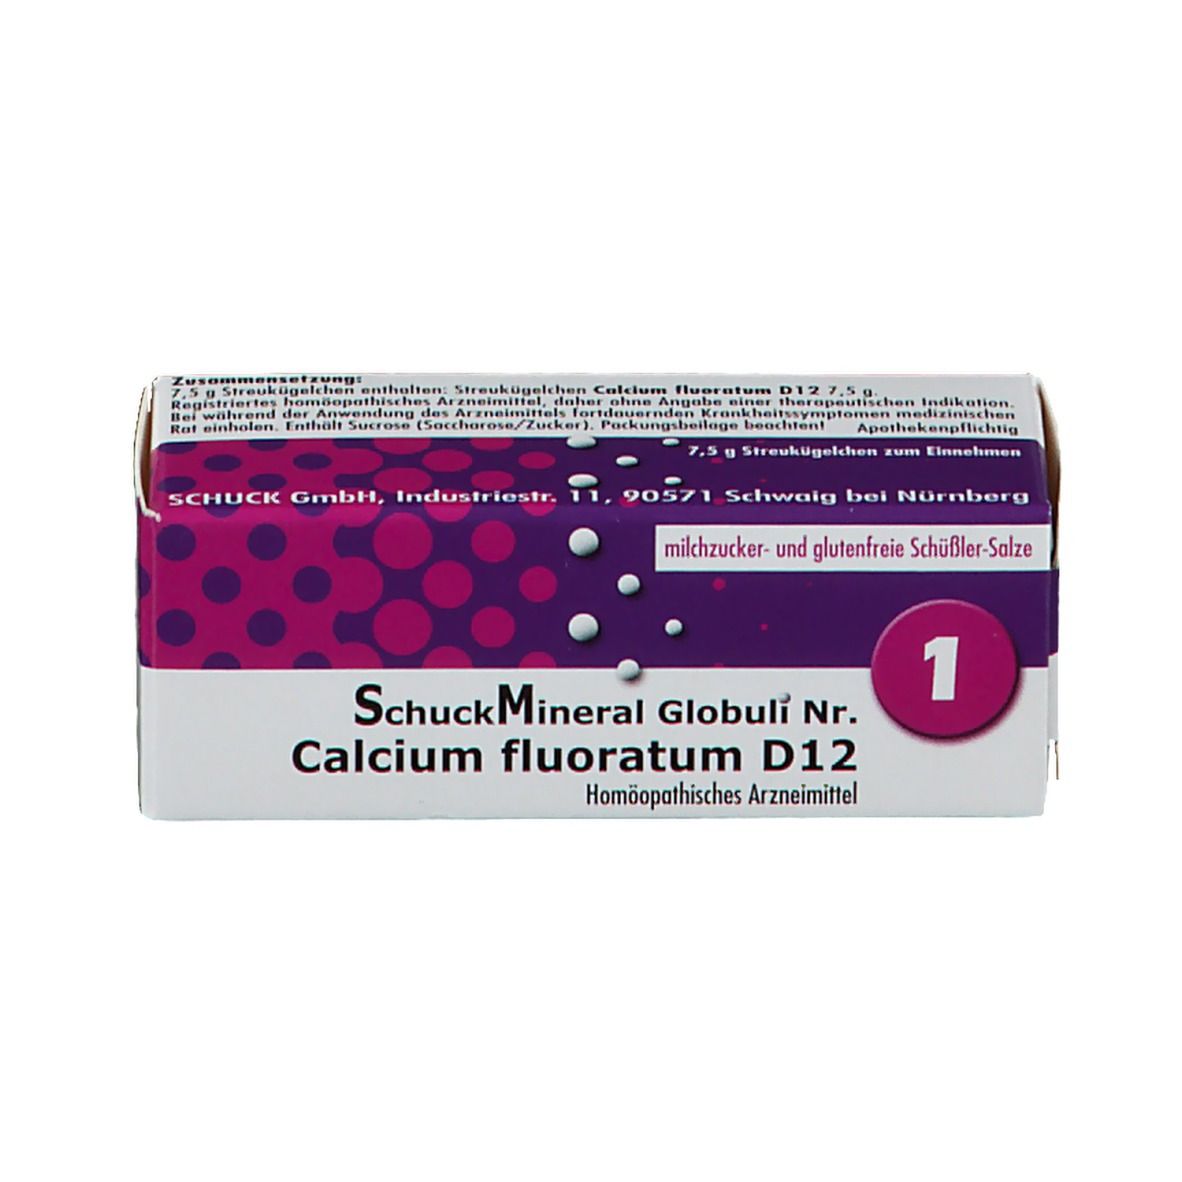 SchuckMineral Globuli Nr. 1 Calcium fluoratum D12